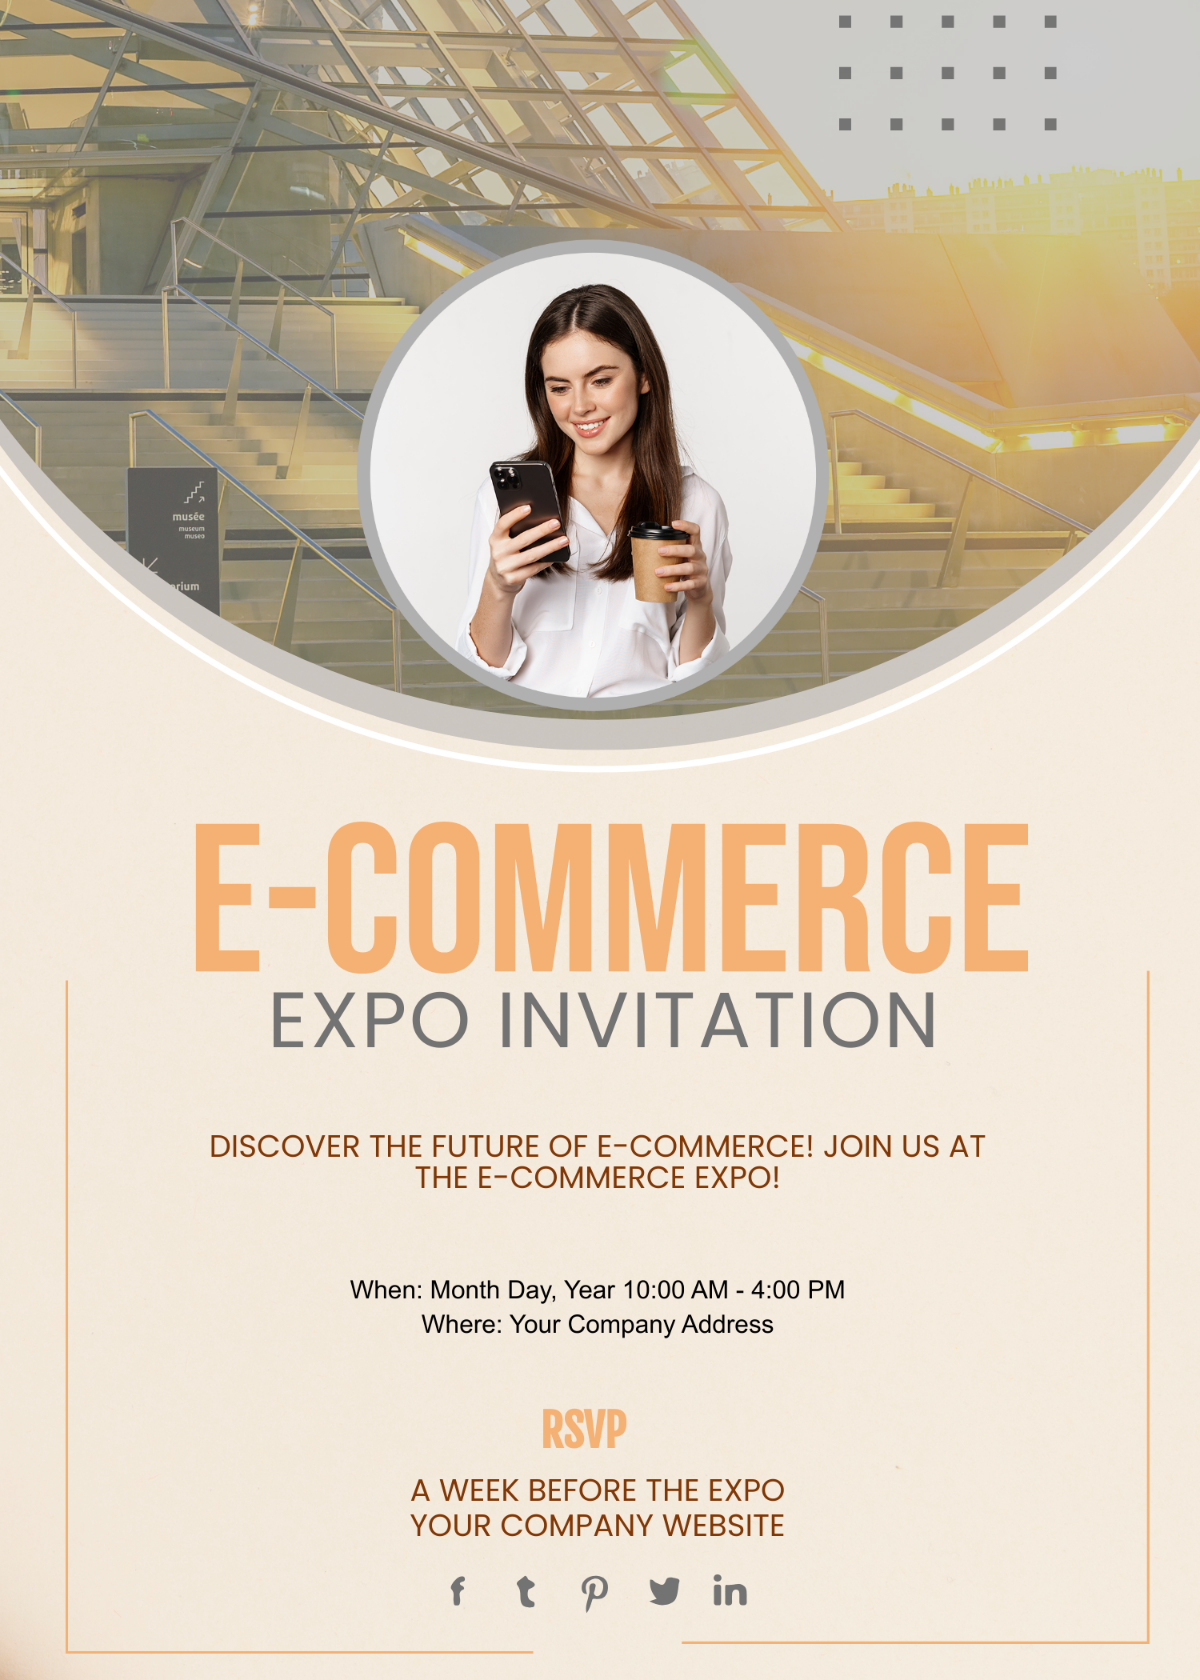 E-commerce Expo Invitation Card Template